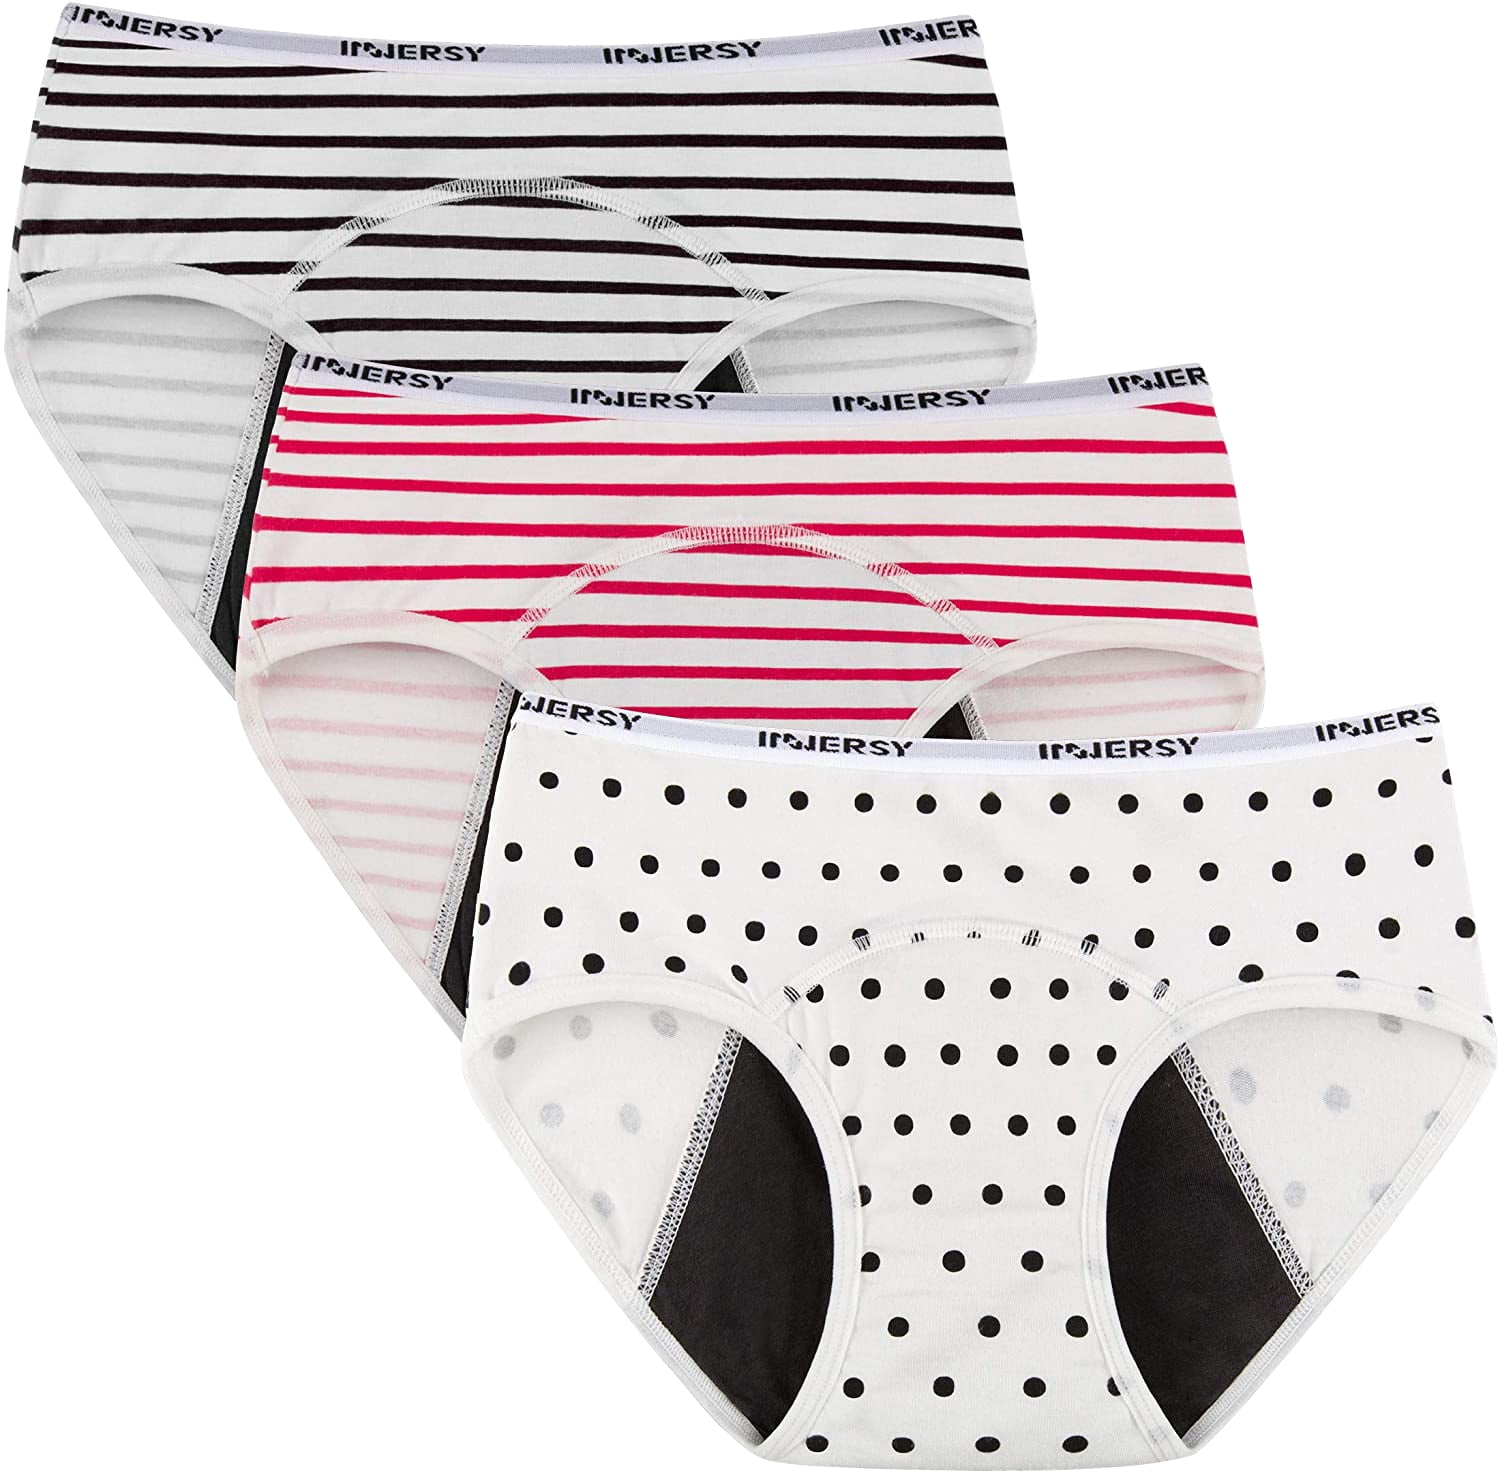 INNERSY Girls Periods Underwear Cotton Underwear Menstruation Briefs Pack of 3 